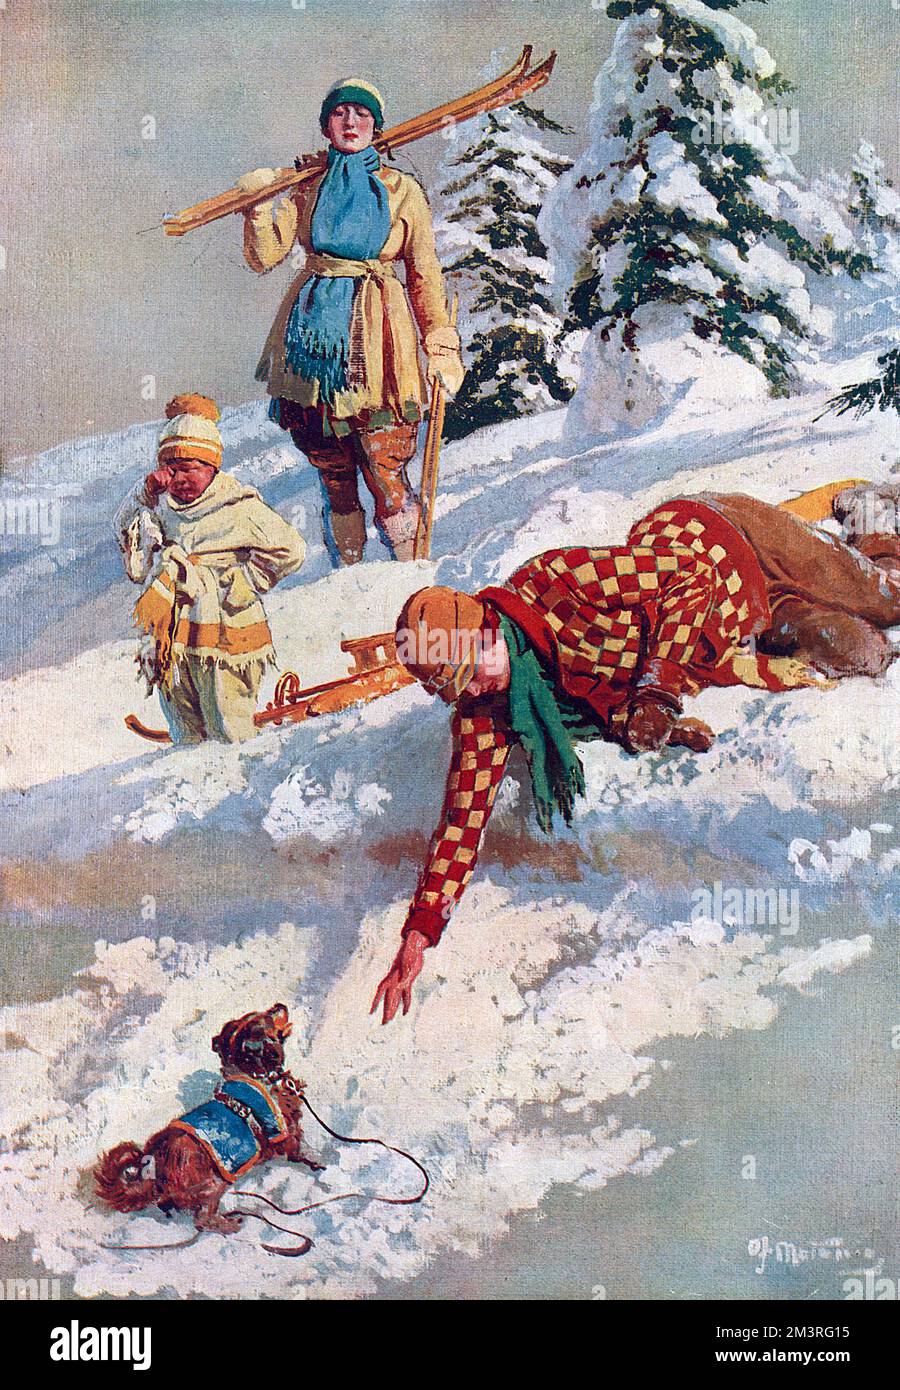 The Rescue - une scène sur une piste de neige suisse. Un skieur se penche pour sauver un petit chien qui est tombé sur le bord d'une corniche enneigée, beaucoup à la détresse d'un petit enfant. Date: 1922 Banque D'Images